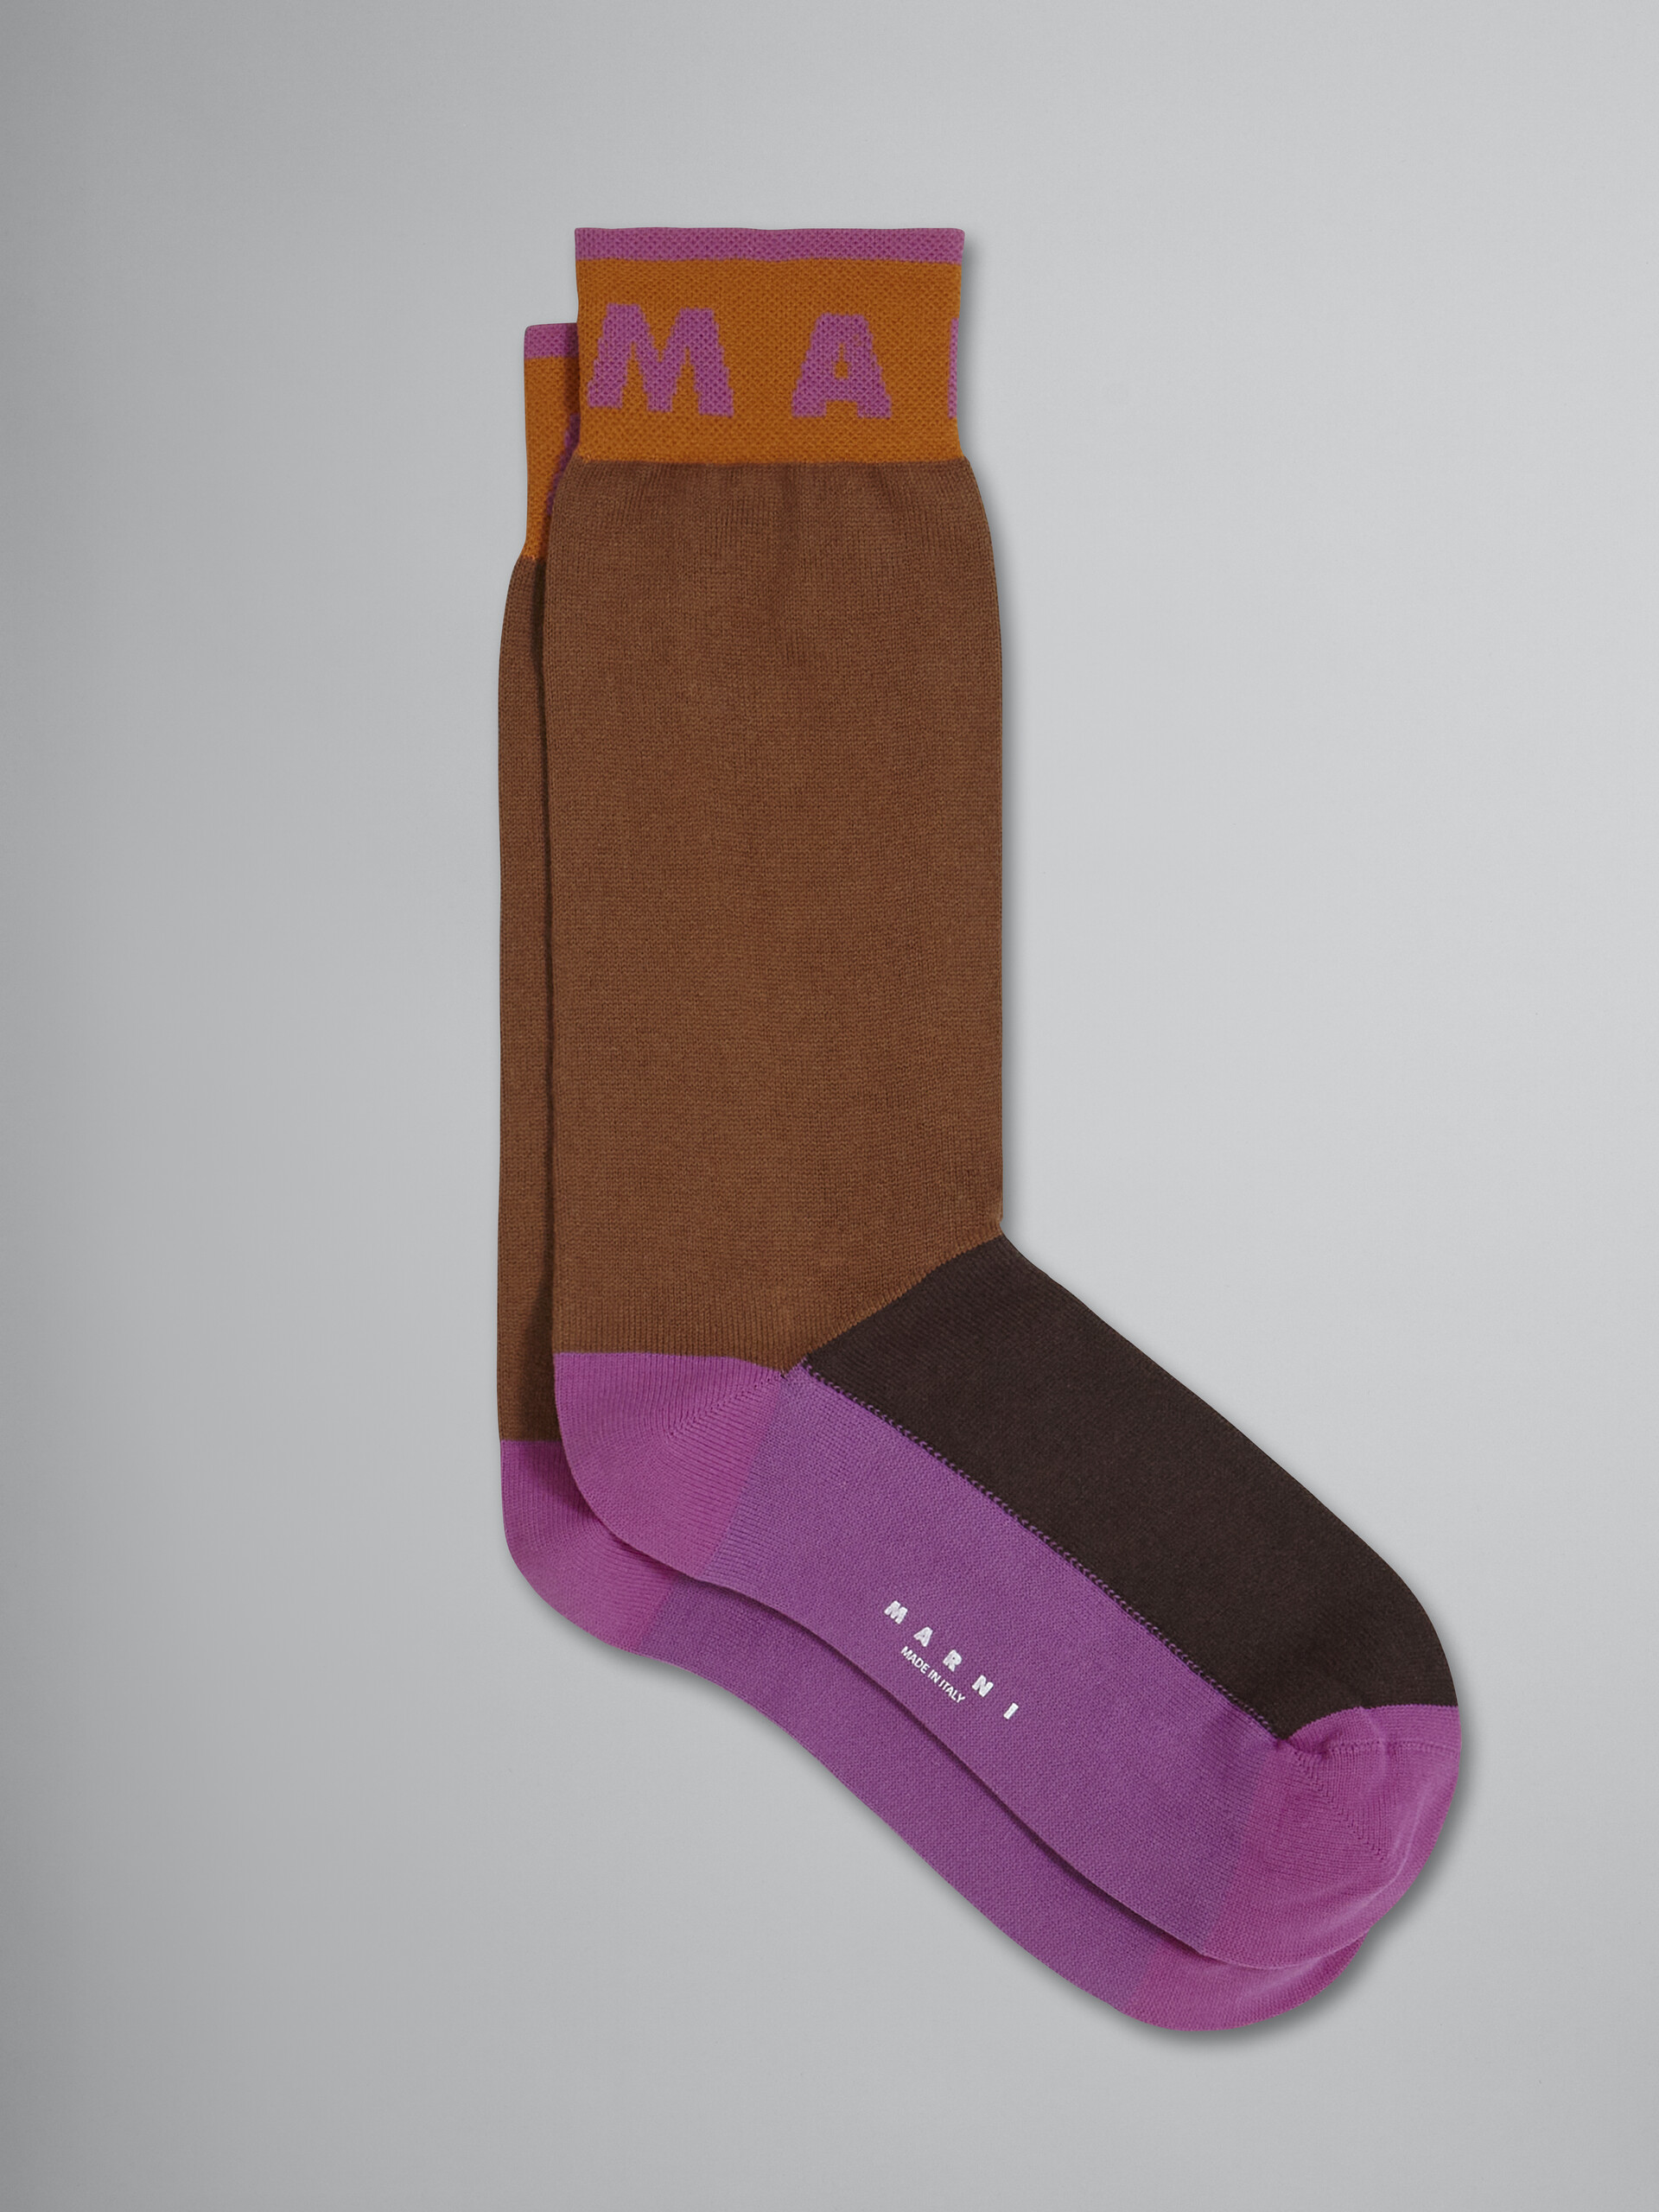 Brown blueblack and pink cotton and nylon sock - Socks - Image 1